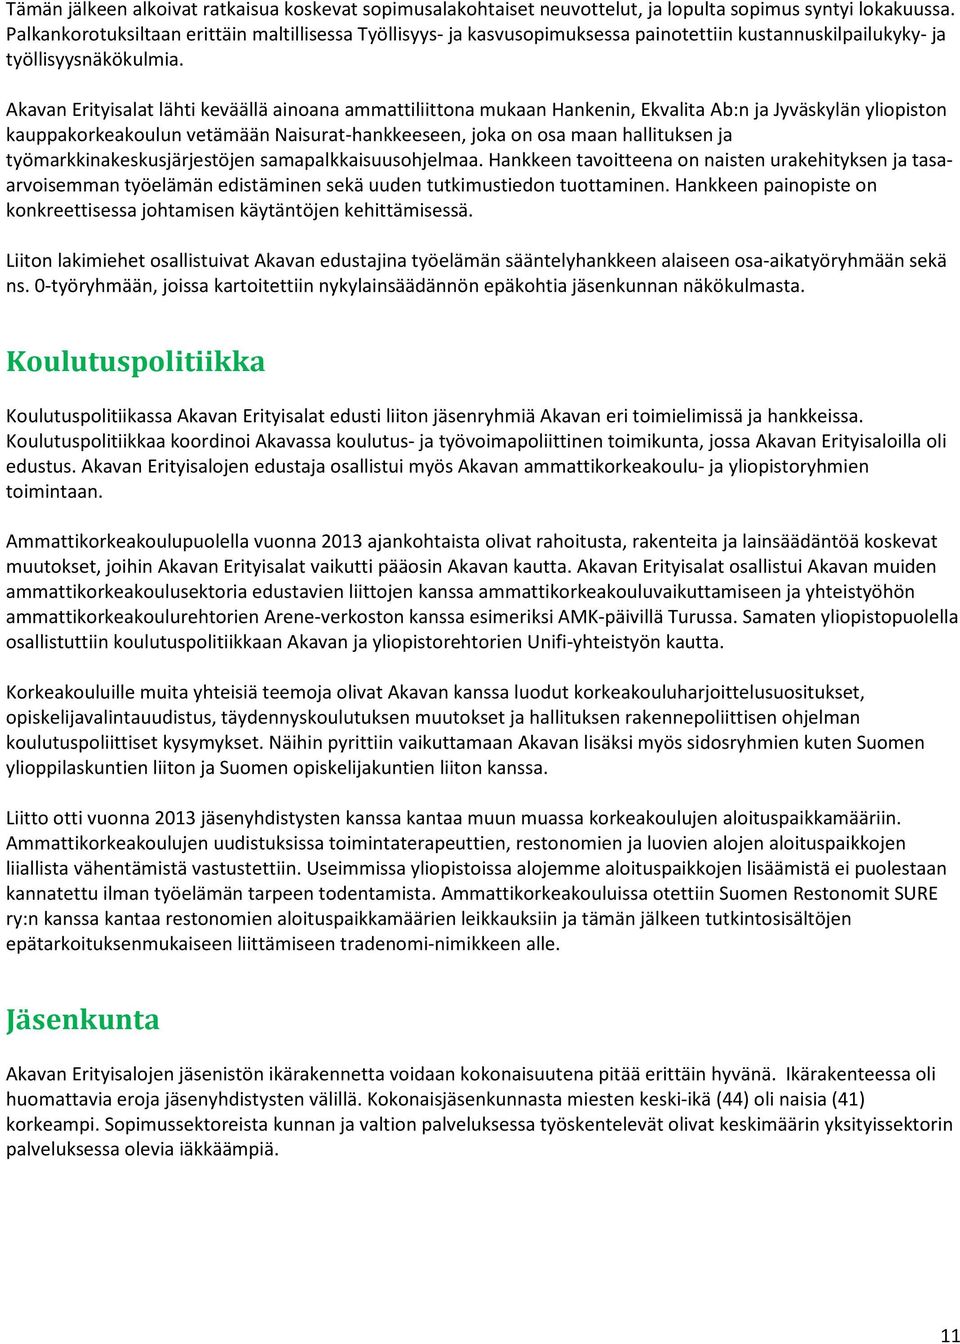 Akavan Erityisalat lähti keväällä ainoana ammattiliittona mukaan Hankenin, Ekvalita Ab:n ja Jyväskylän yliopiston kauppakorkeakoulun vetämään Naisurat-hankkeeseen, joka on osa maan hallituksen ja